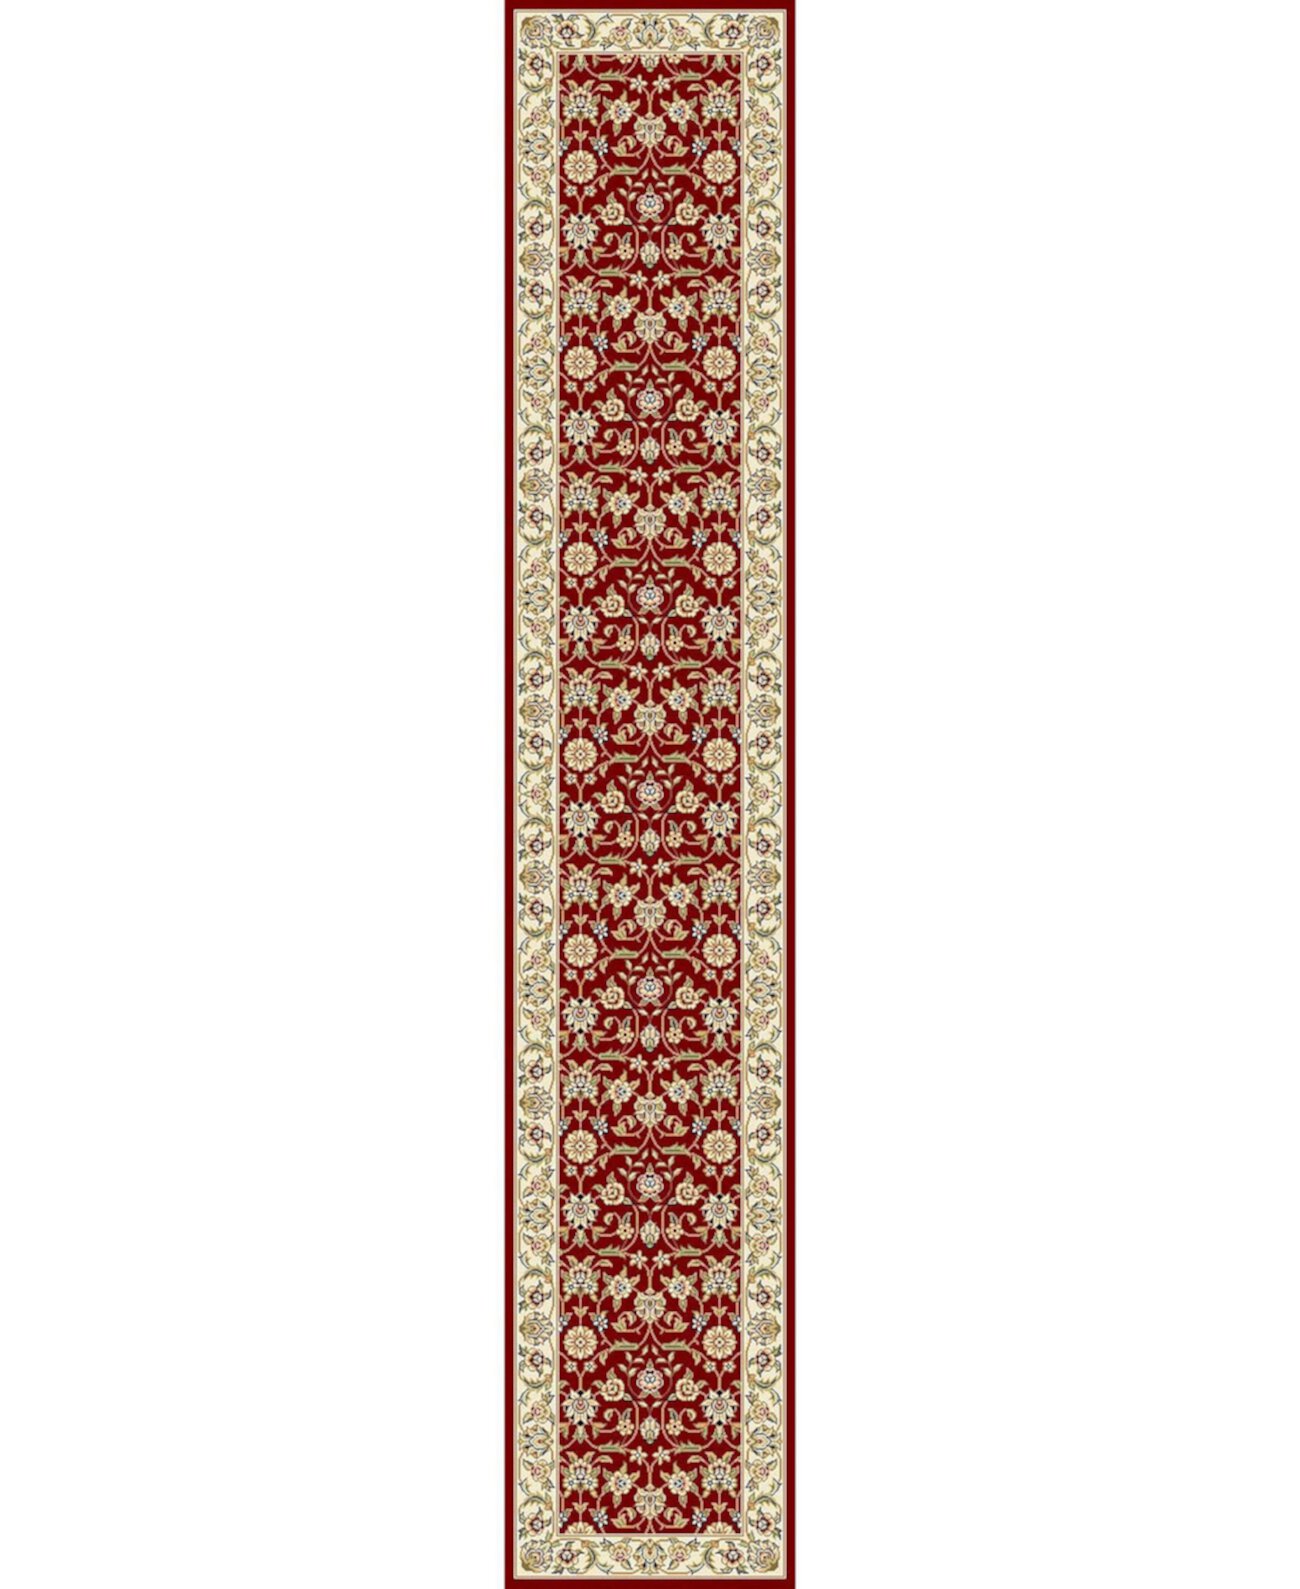 Lyndhurst LNH312 Красный и цвет слоновой кости Коврик для беговой дорожки размером 2 фута 3 x 20 футов Safavieh